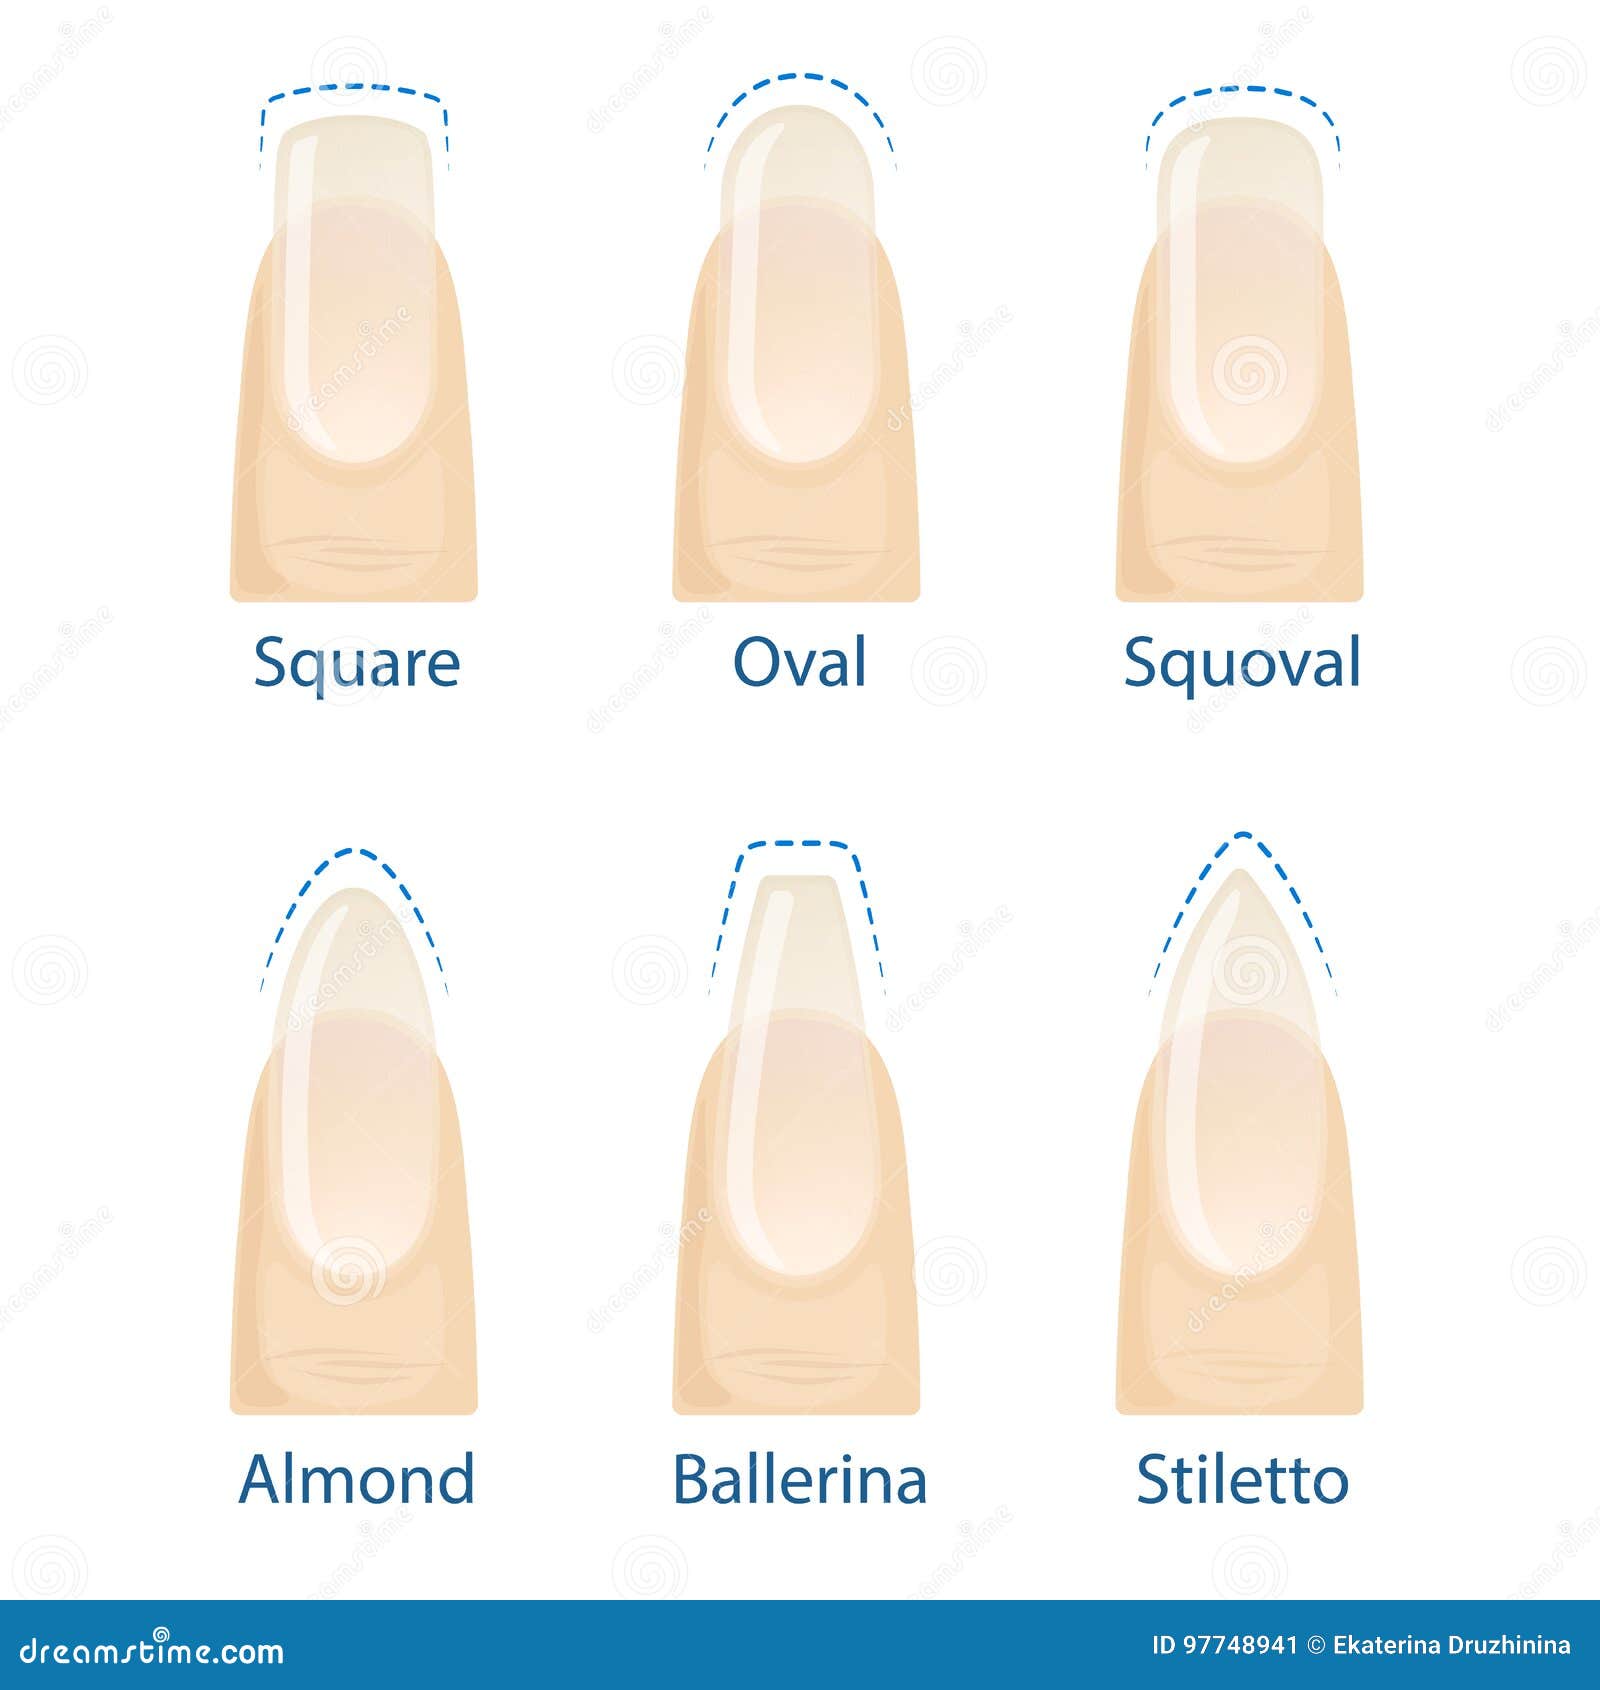 Сделать форму ногтей в домашних. Формы ногтей. Квадратно овальная форма ногтей. Формы ногтей для маникюра и их названия. Базовые формы ногтей.